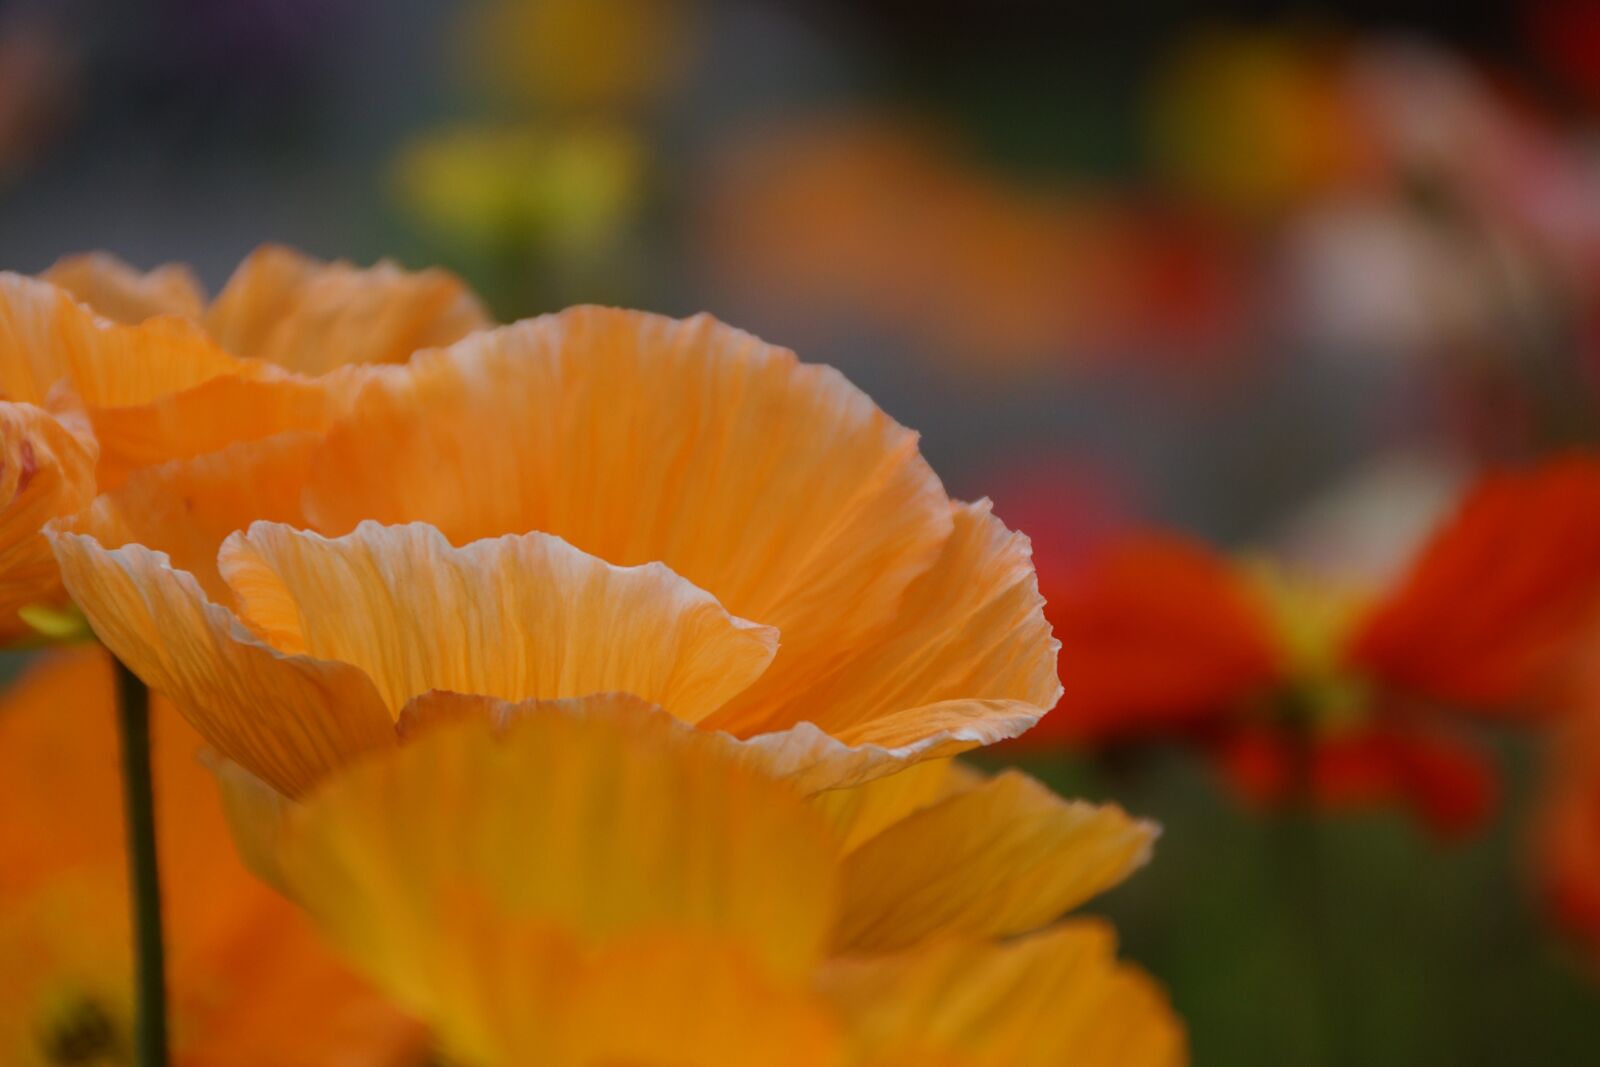 Sony DT 18-250mm F3.5-6.3 sample photo. Orange, poppy, flower photography